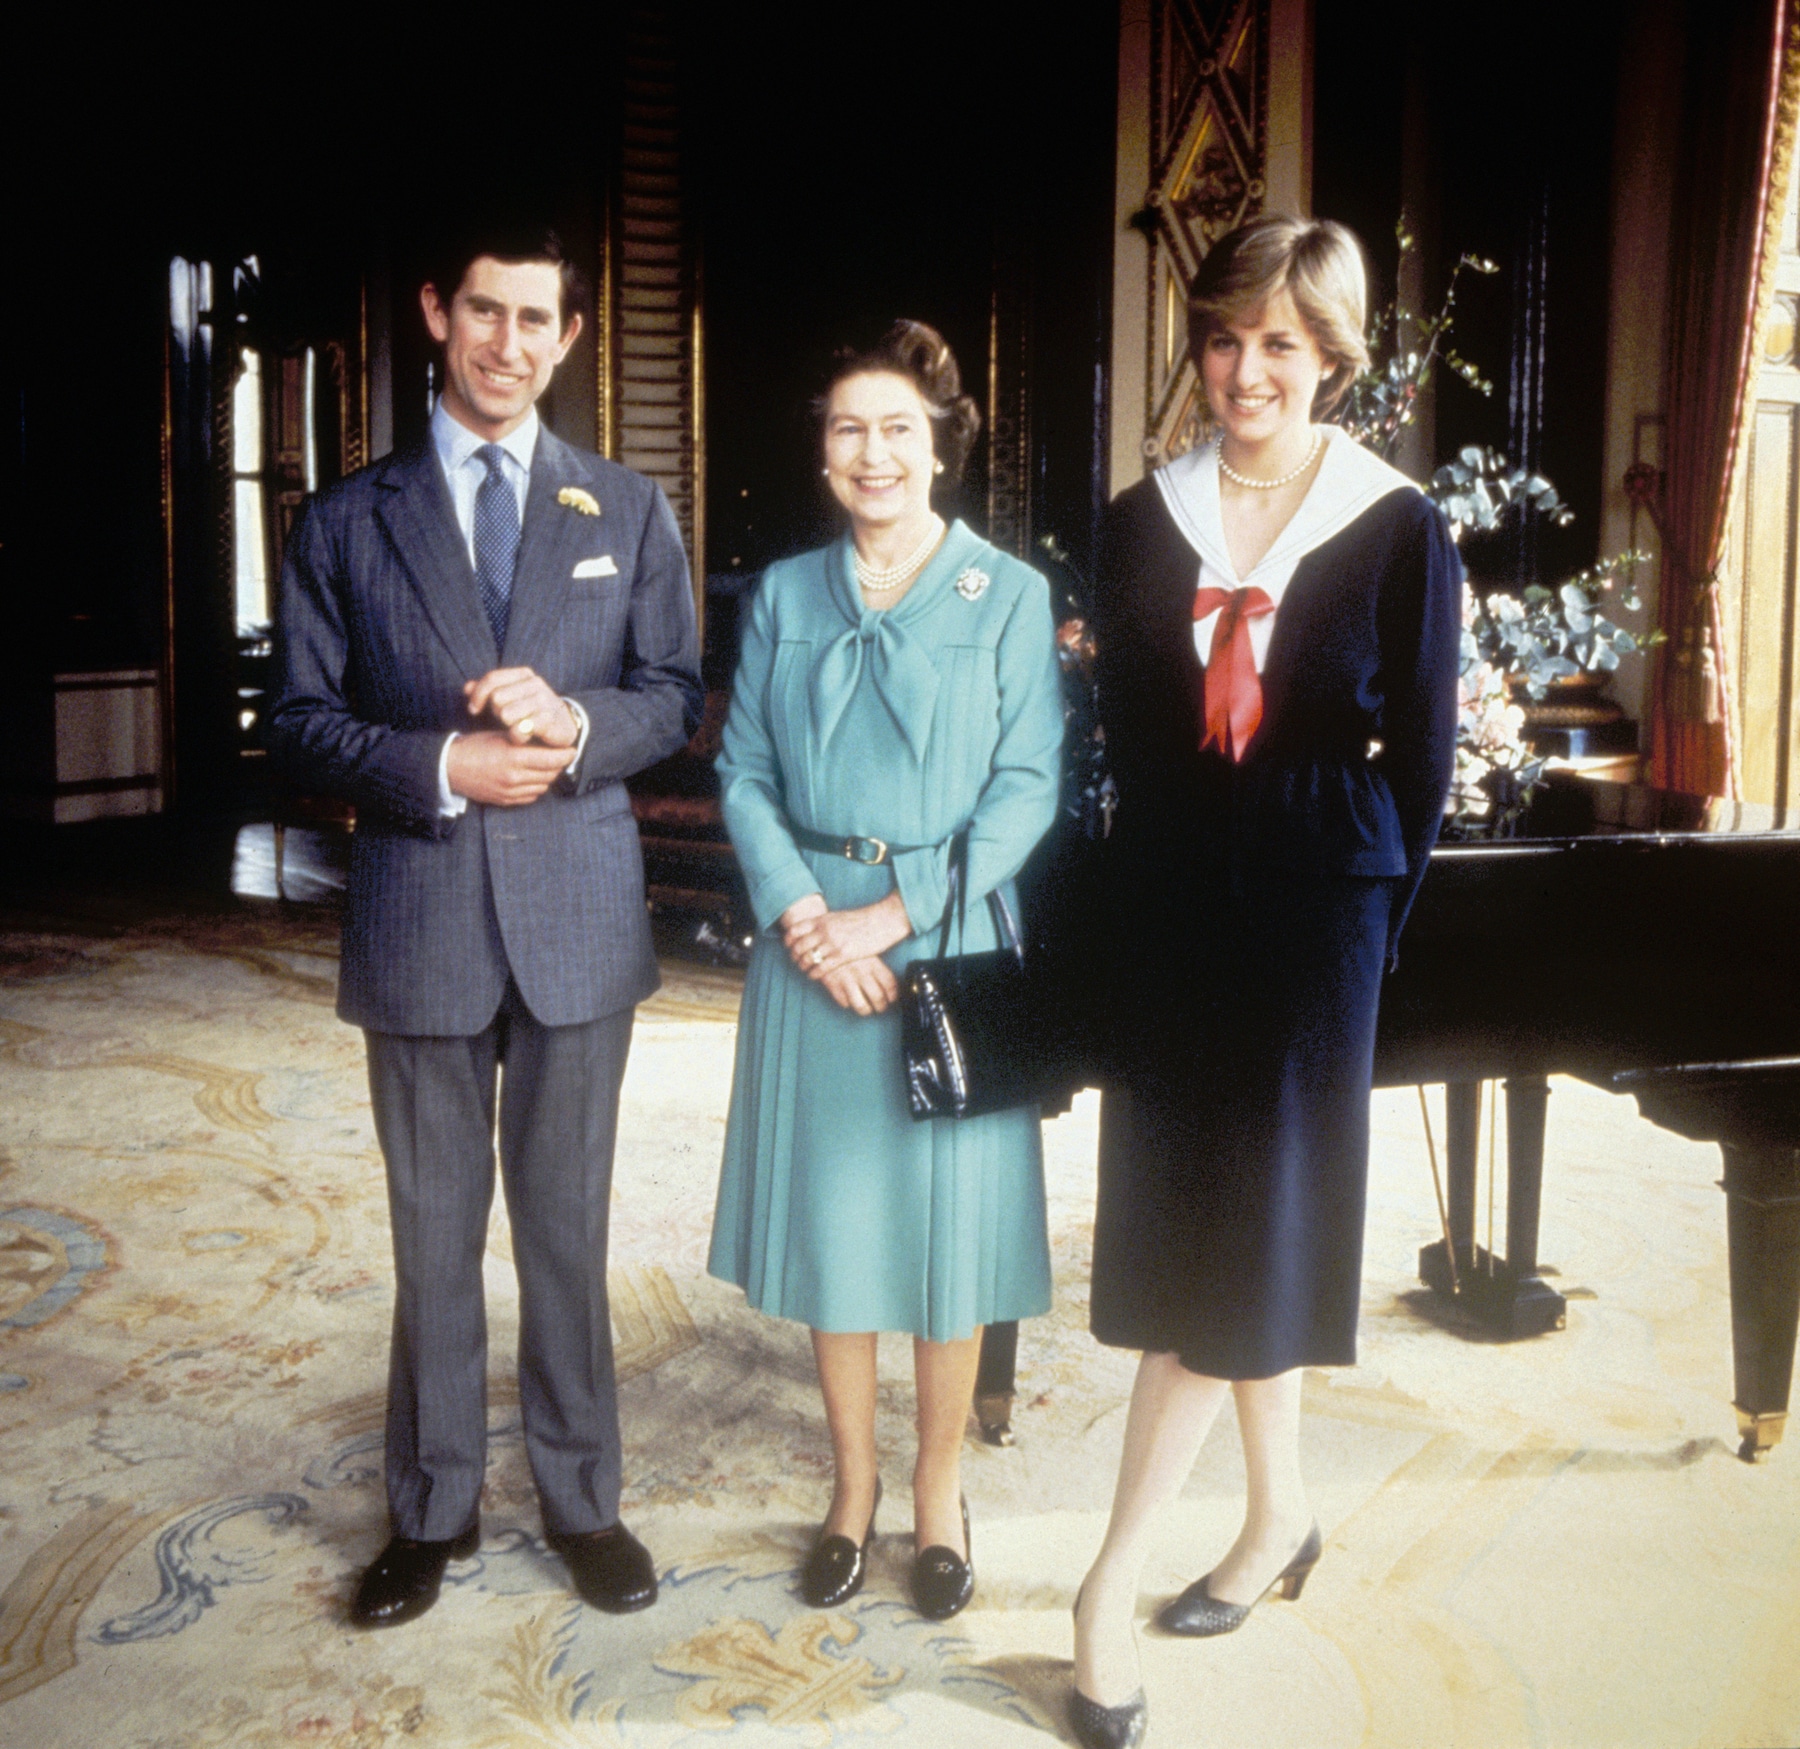 Nữ hoàng Elizabeth II: 70 năm cùng thăng trầm cùng đất nước và hoàng gia - Ảnh 10.